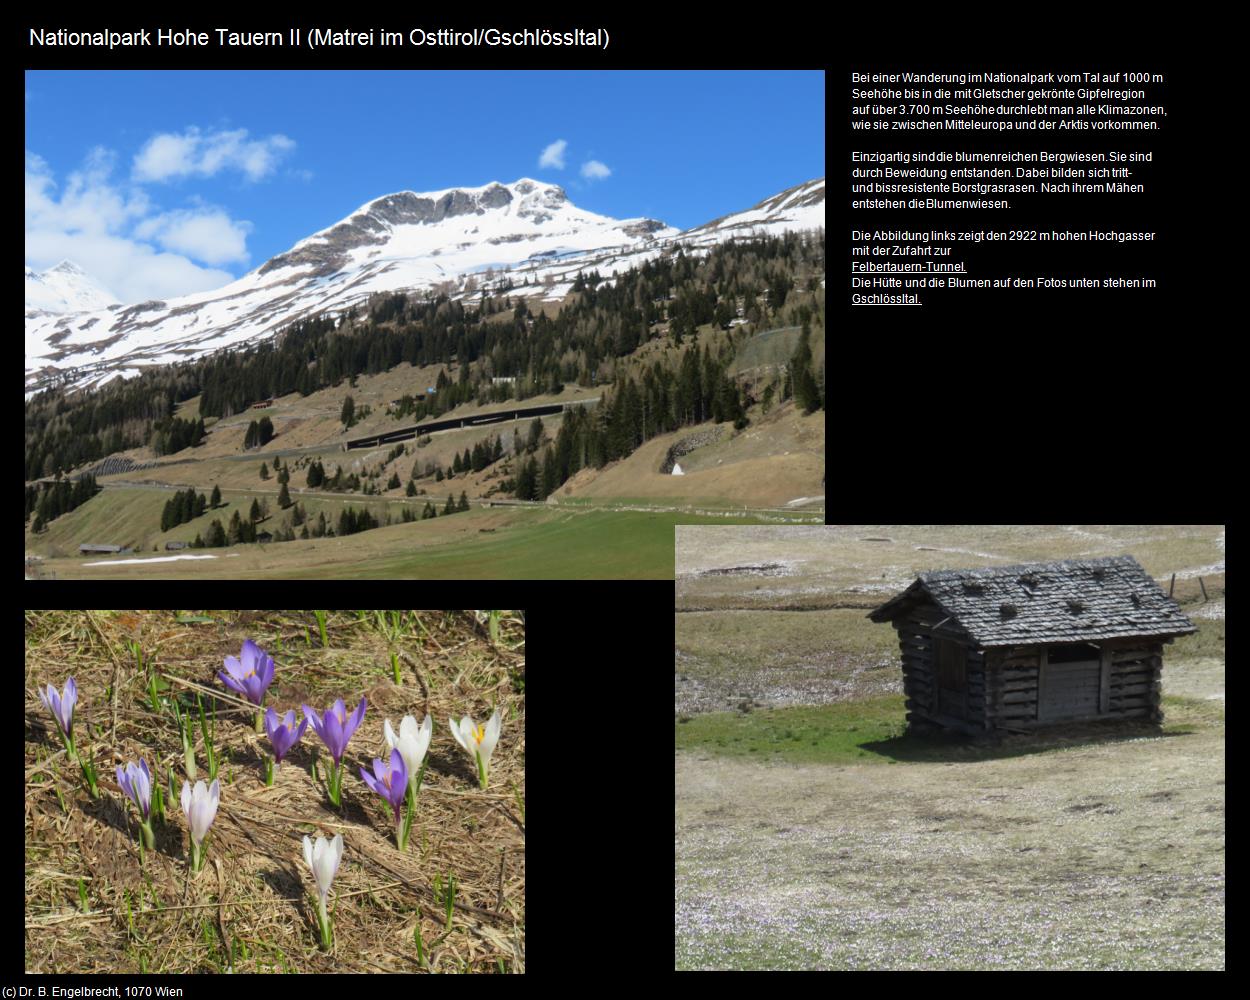 Nationalpark Hohe Tauern II (Gschlössltal) (Matrei in Osttirol) in Kulturatlas-TIROL(c)B.Engelbrecht